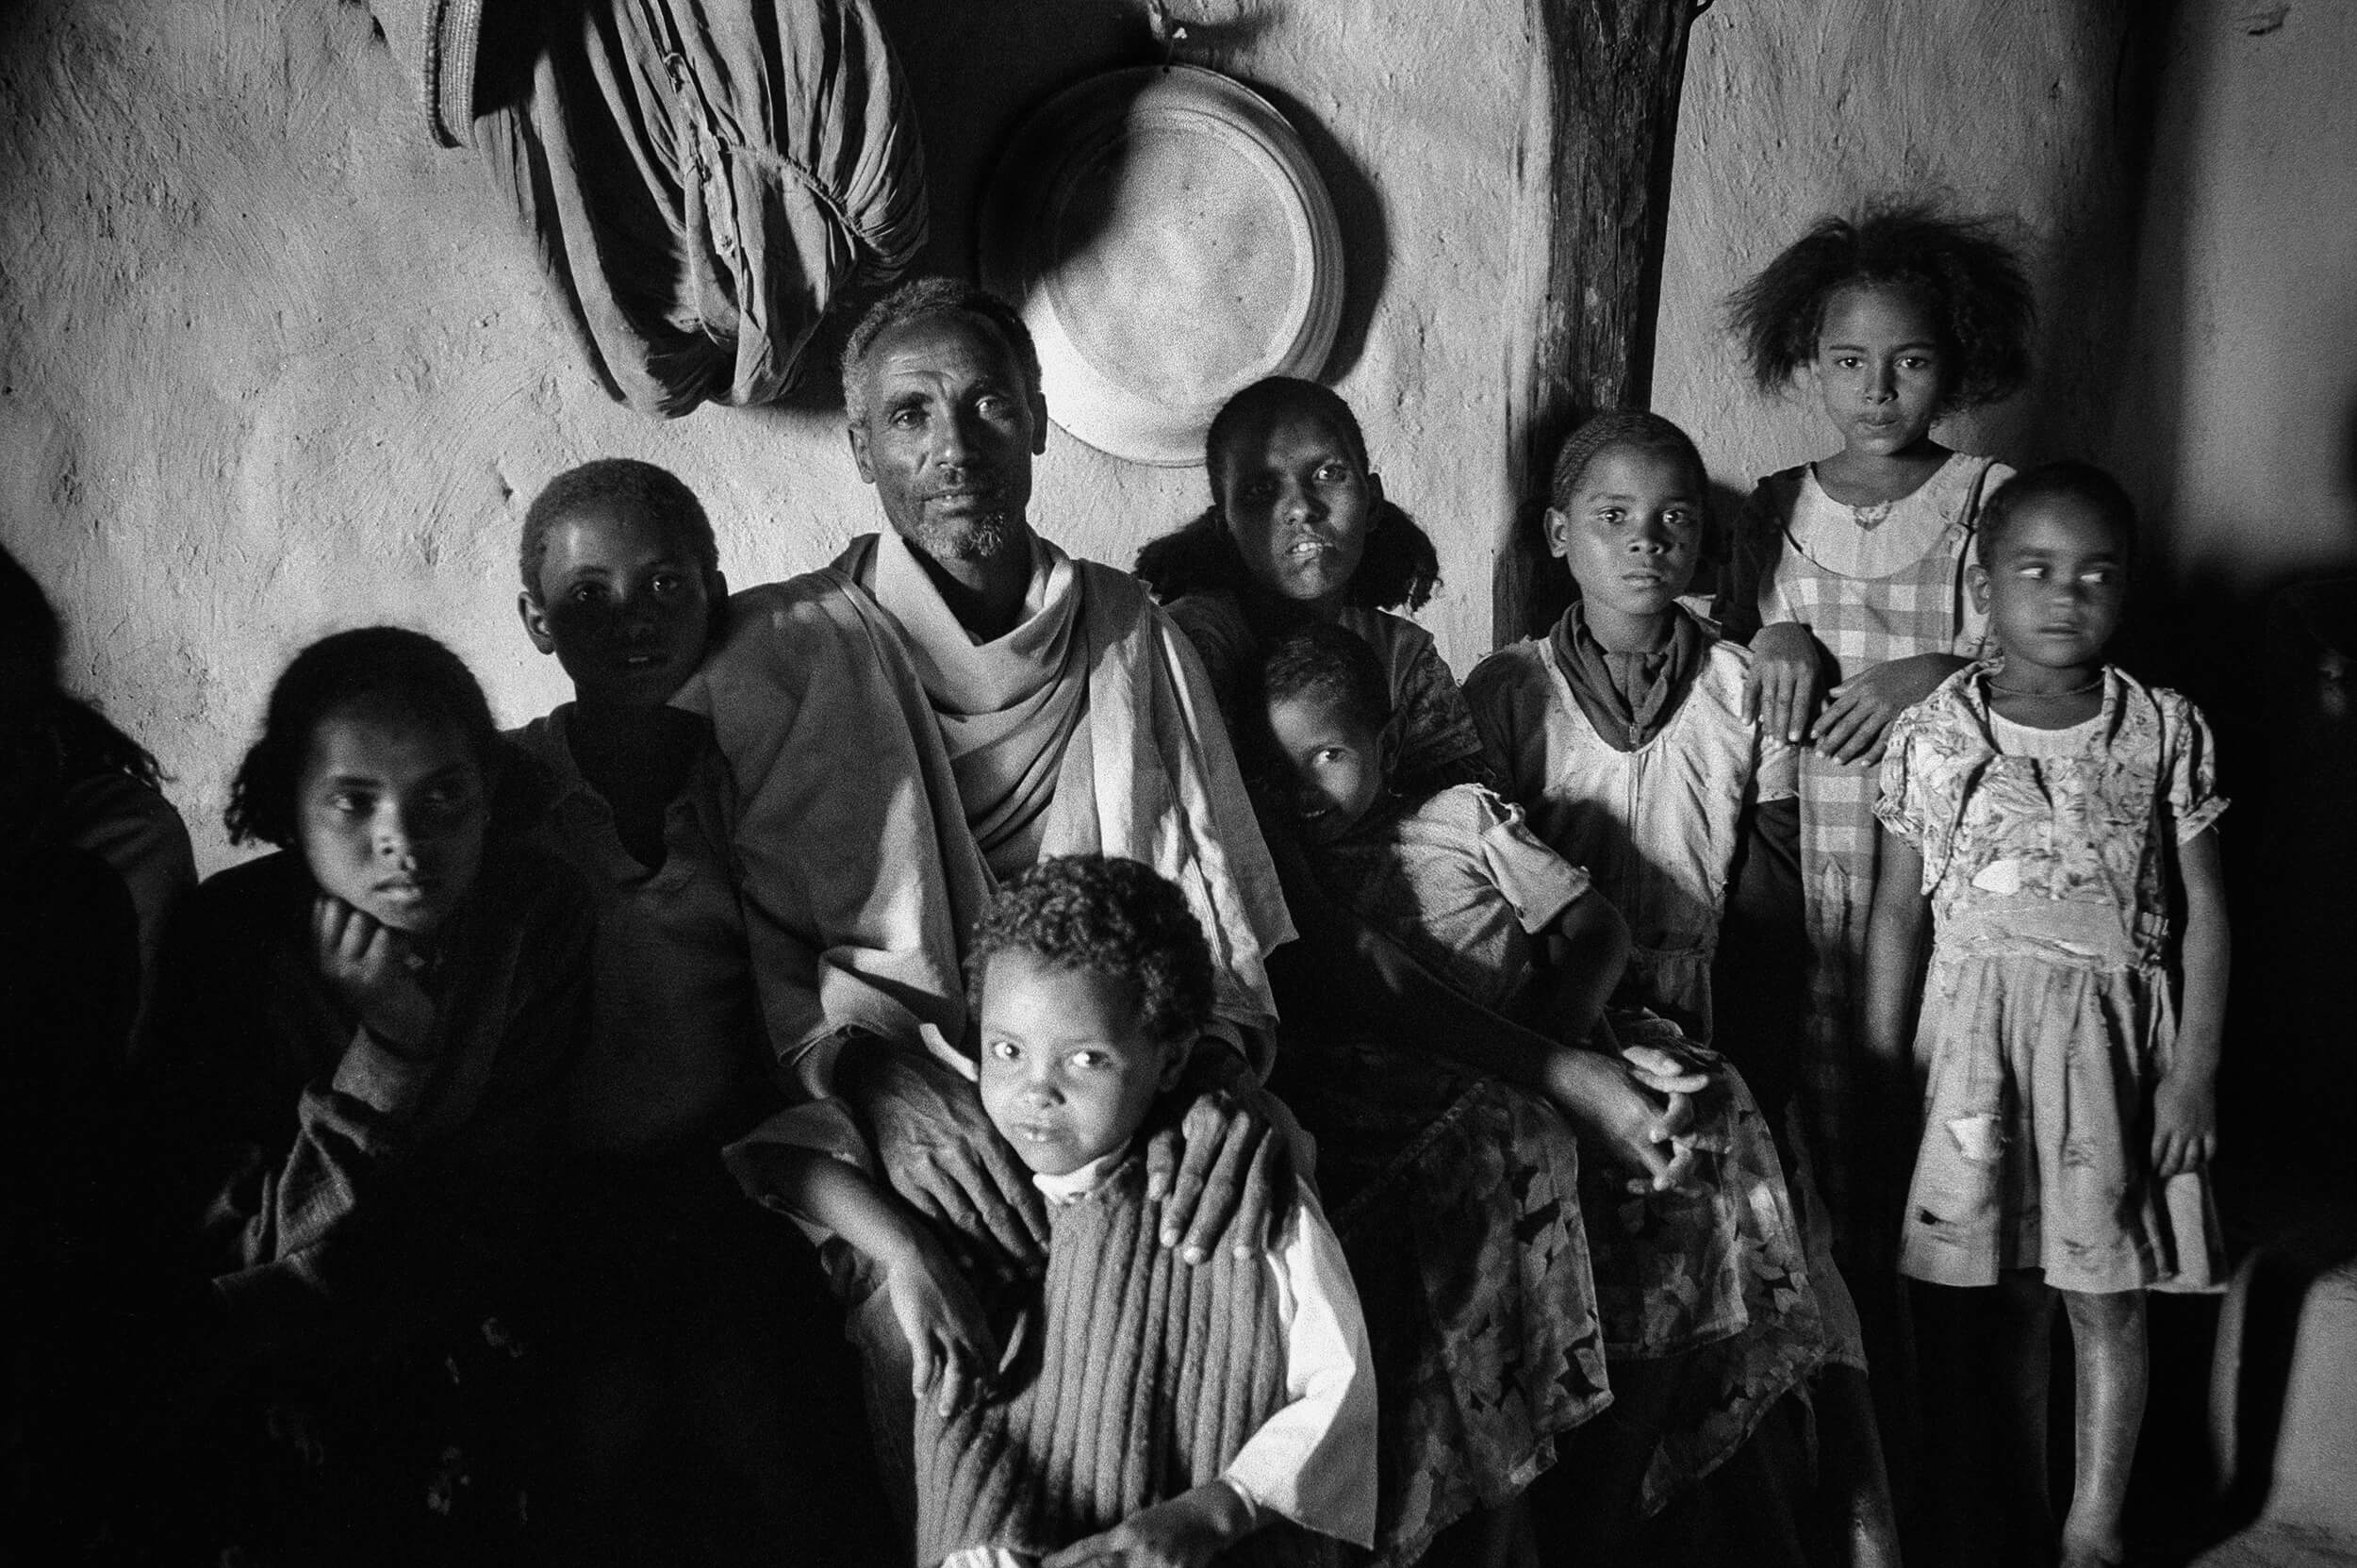  Farmer family in the small village of Mai weini in Eritrea. 